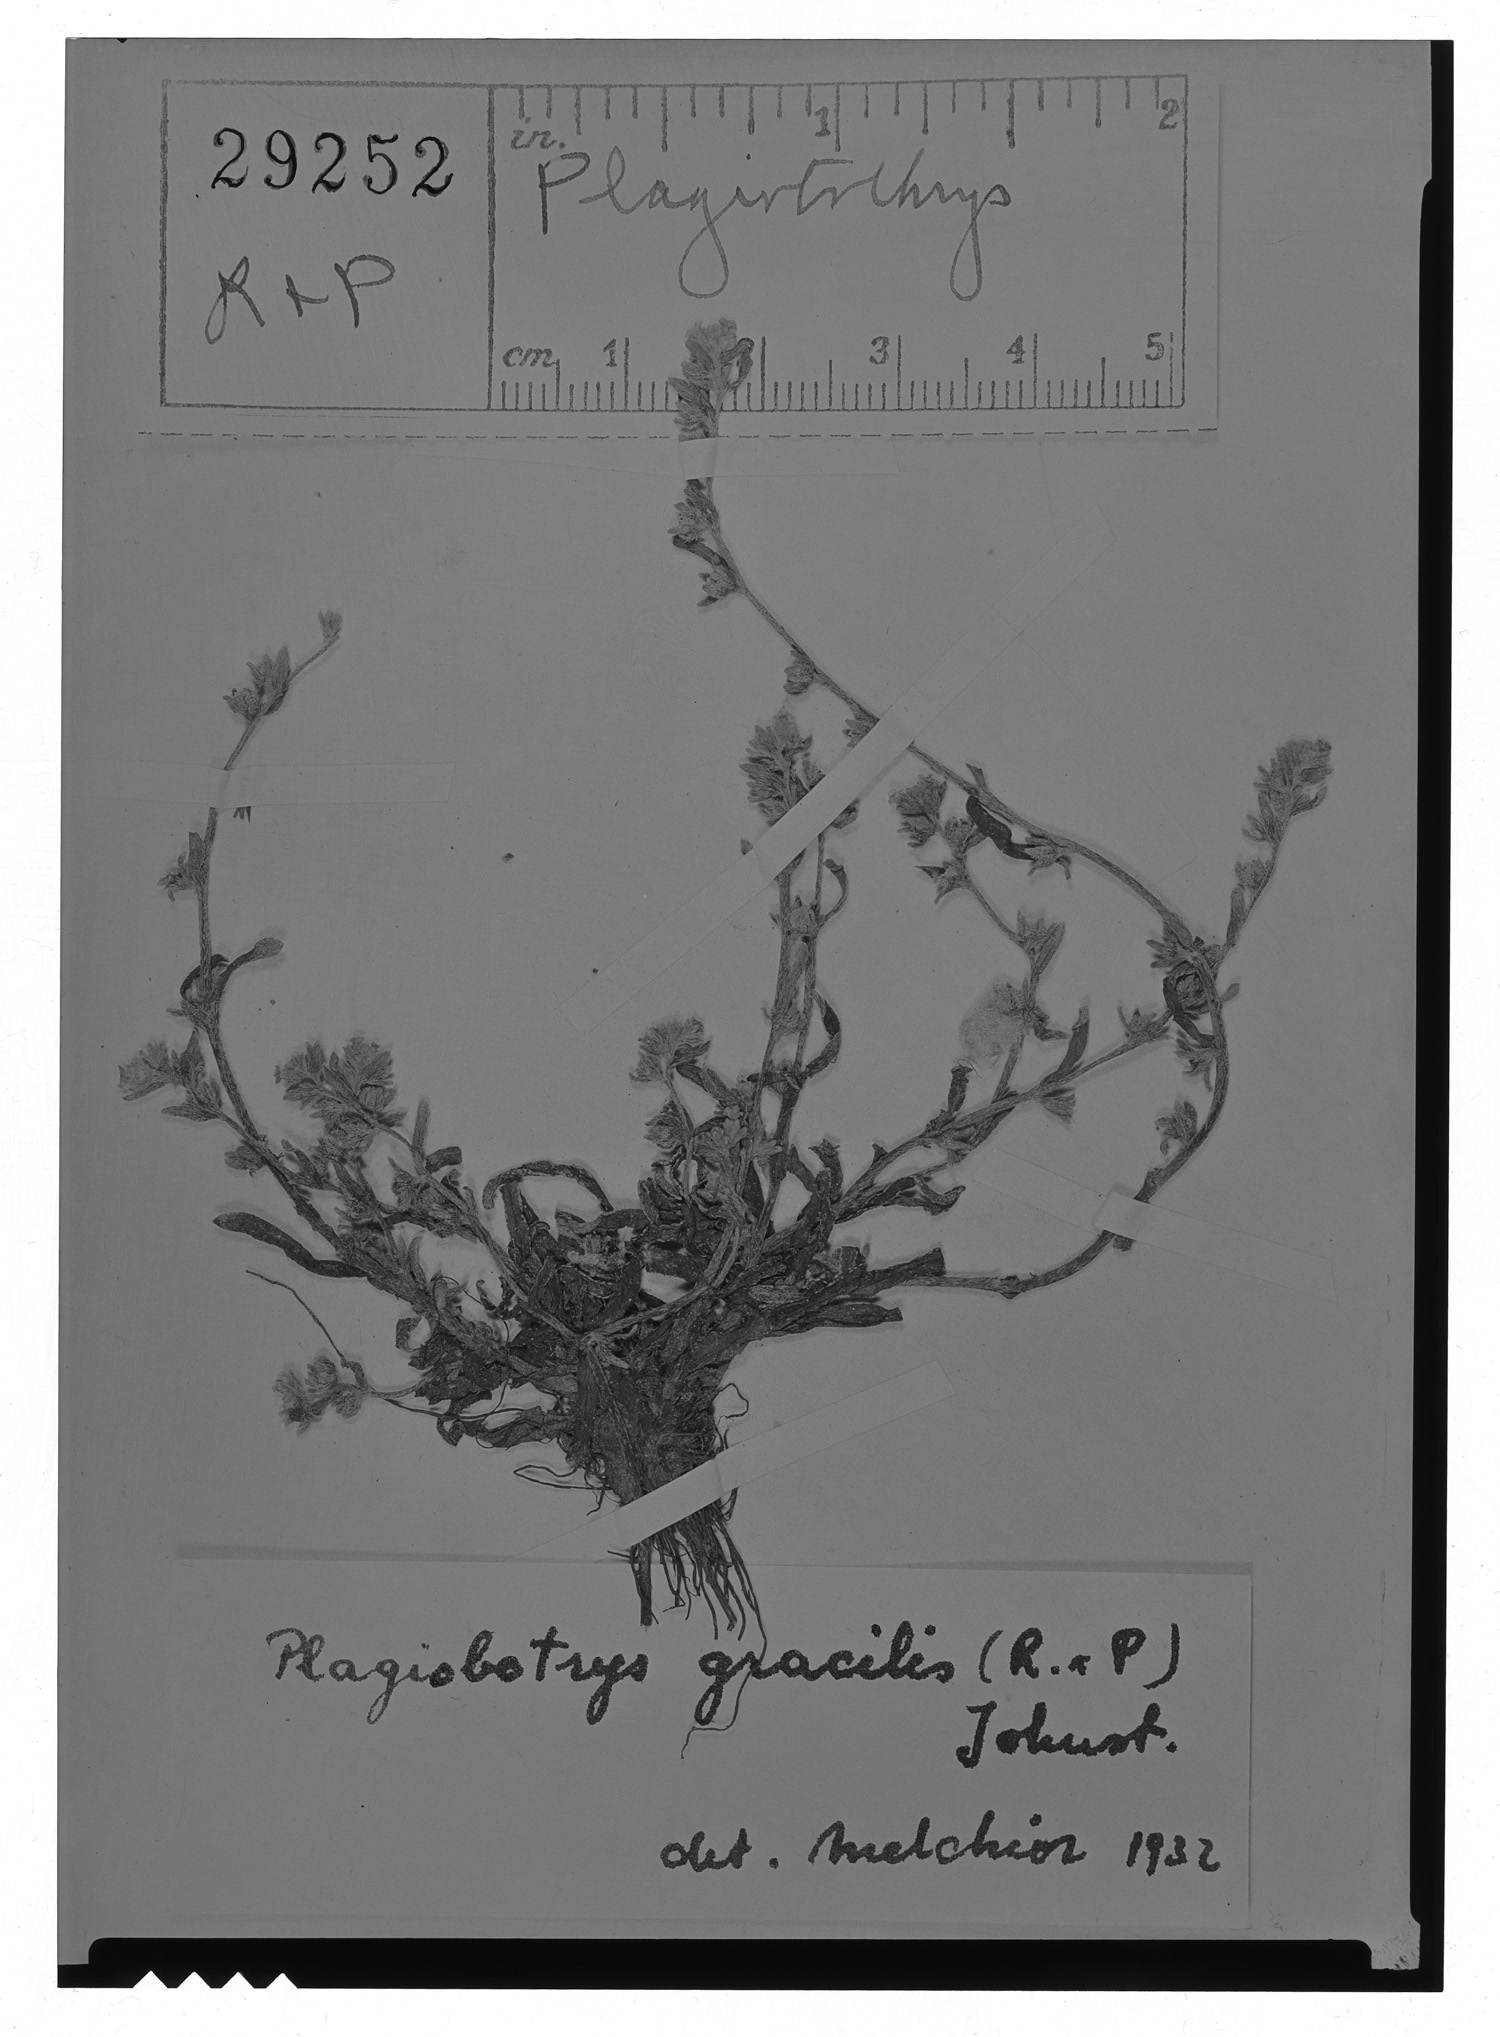 Plagiobothrys image